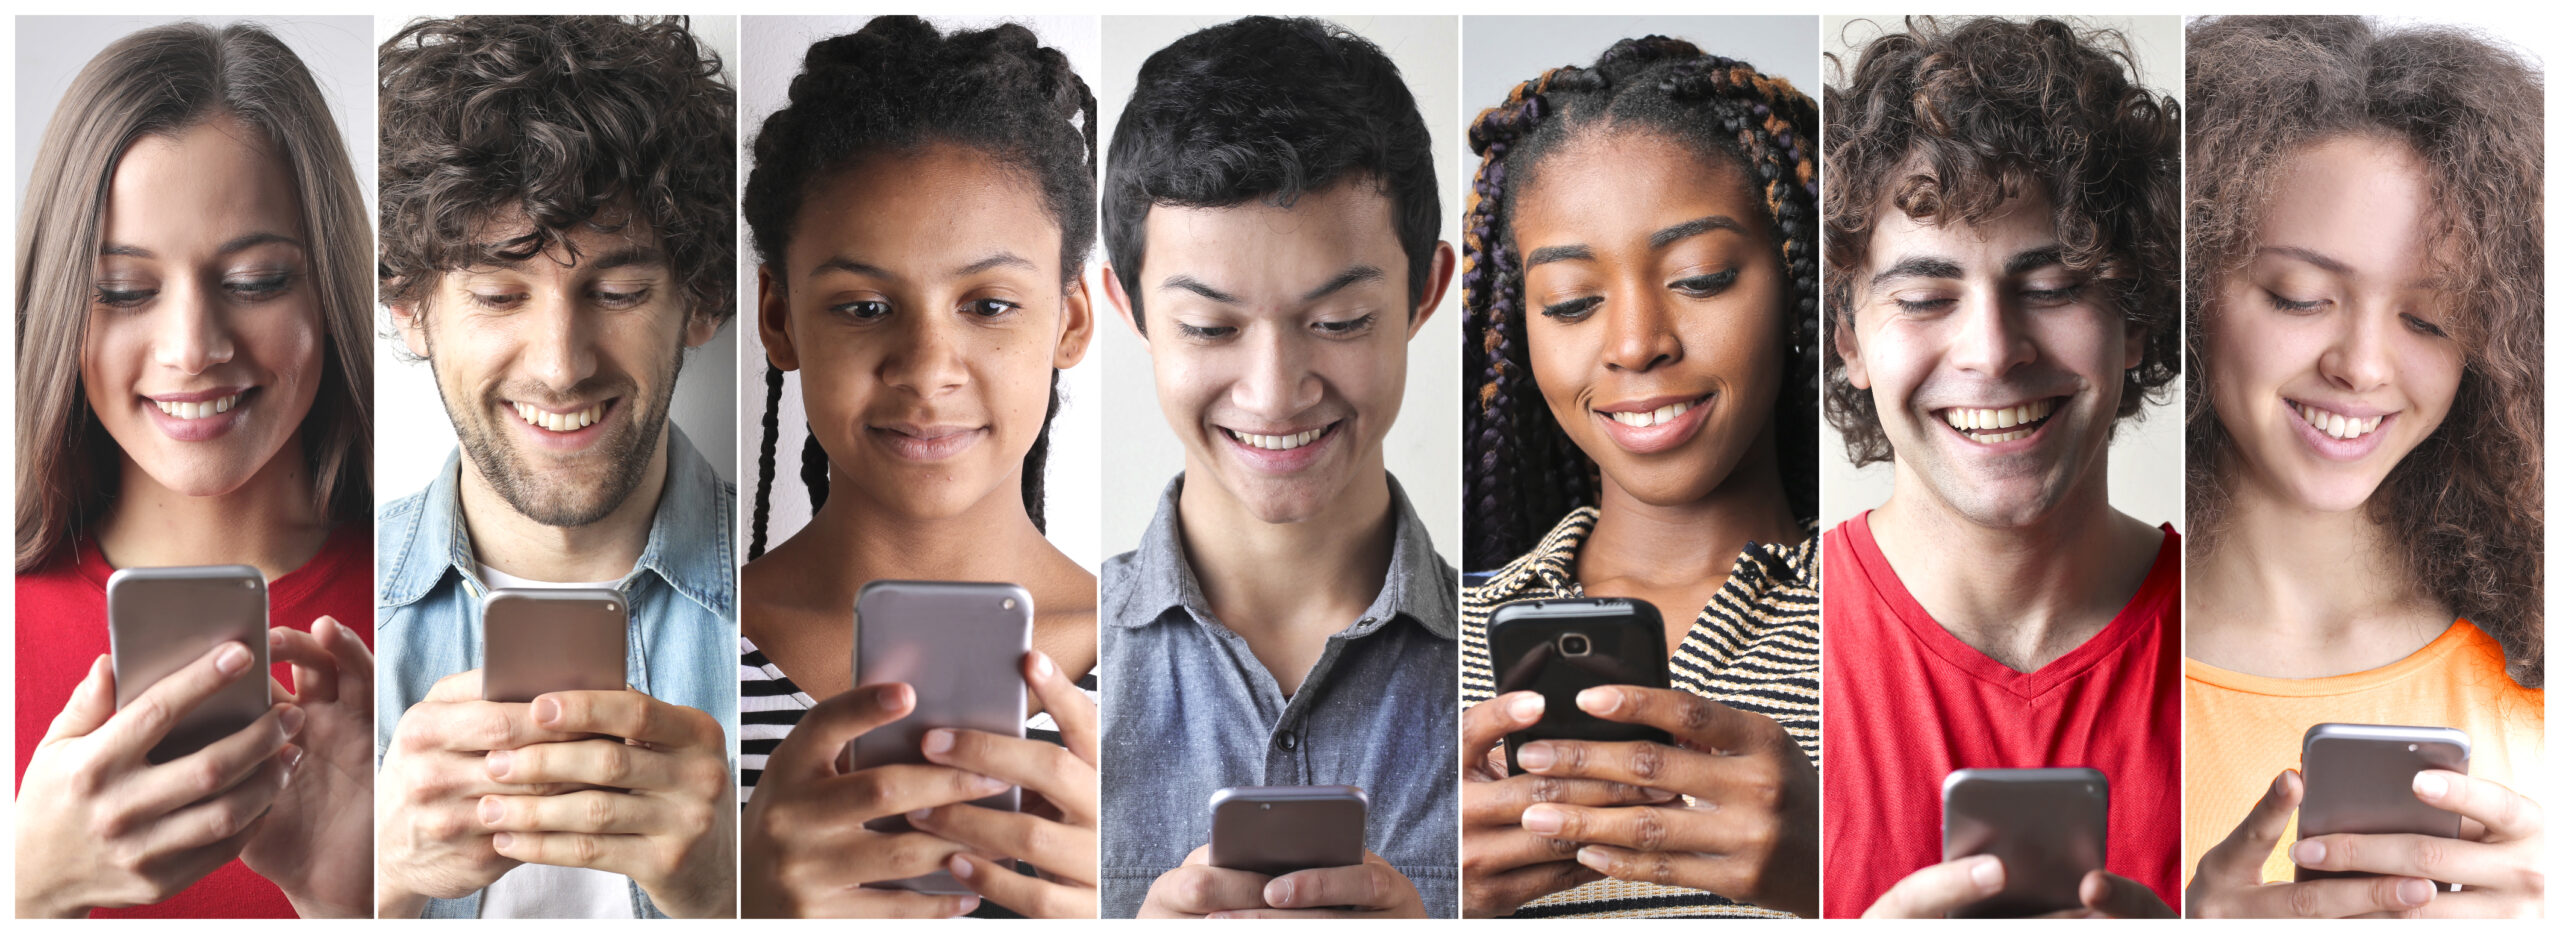 Pessoas de diferentes etnias segurando smartphones e sorrindo